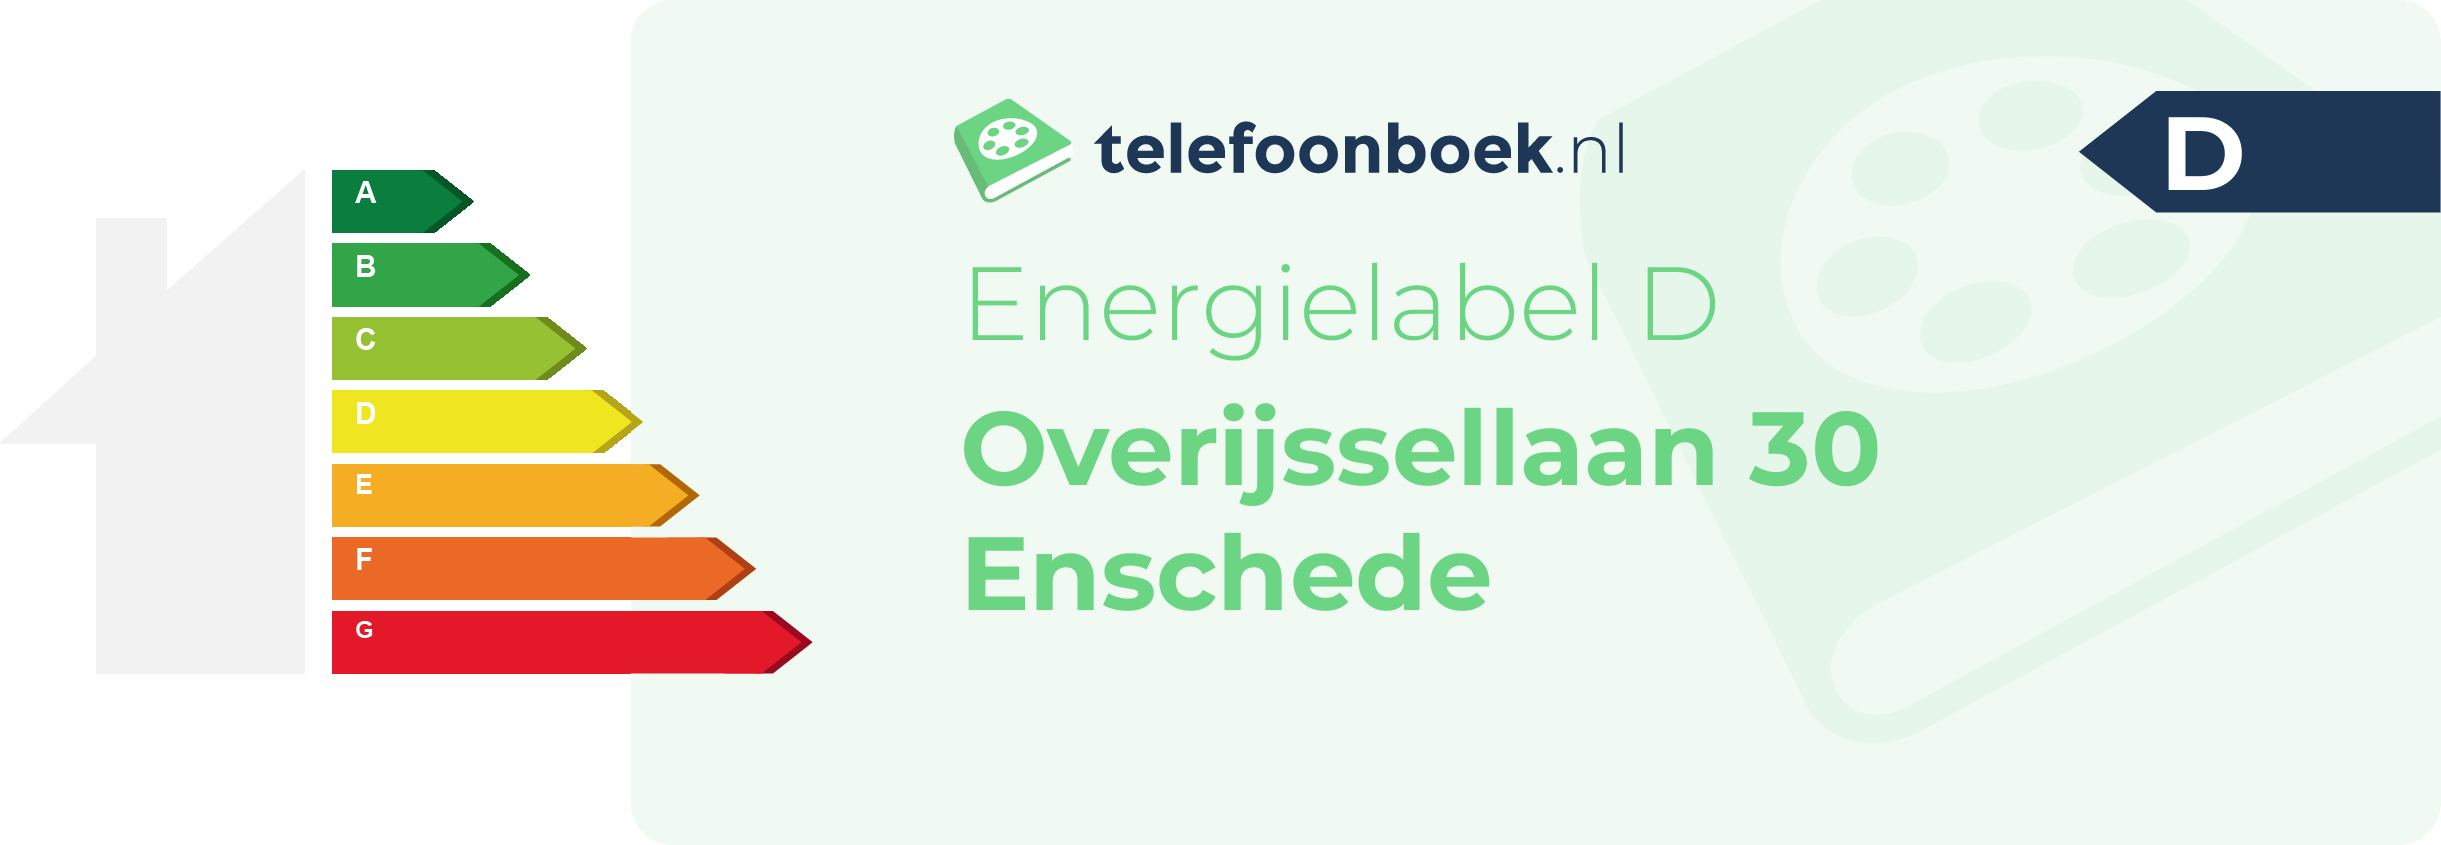 Energielabel Overijssellaan 30 Enschede